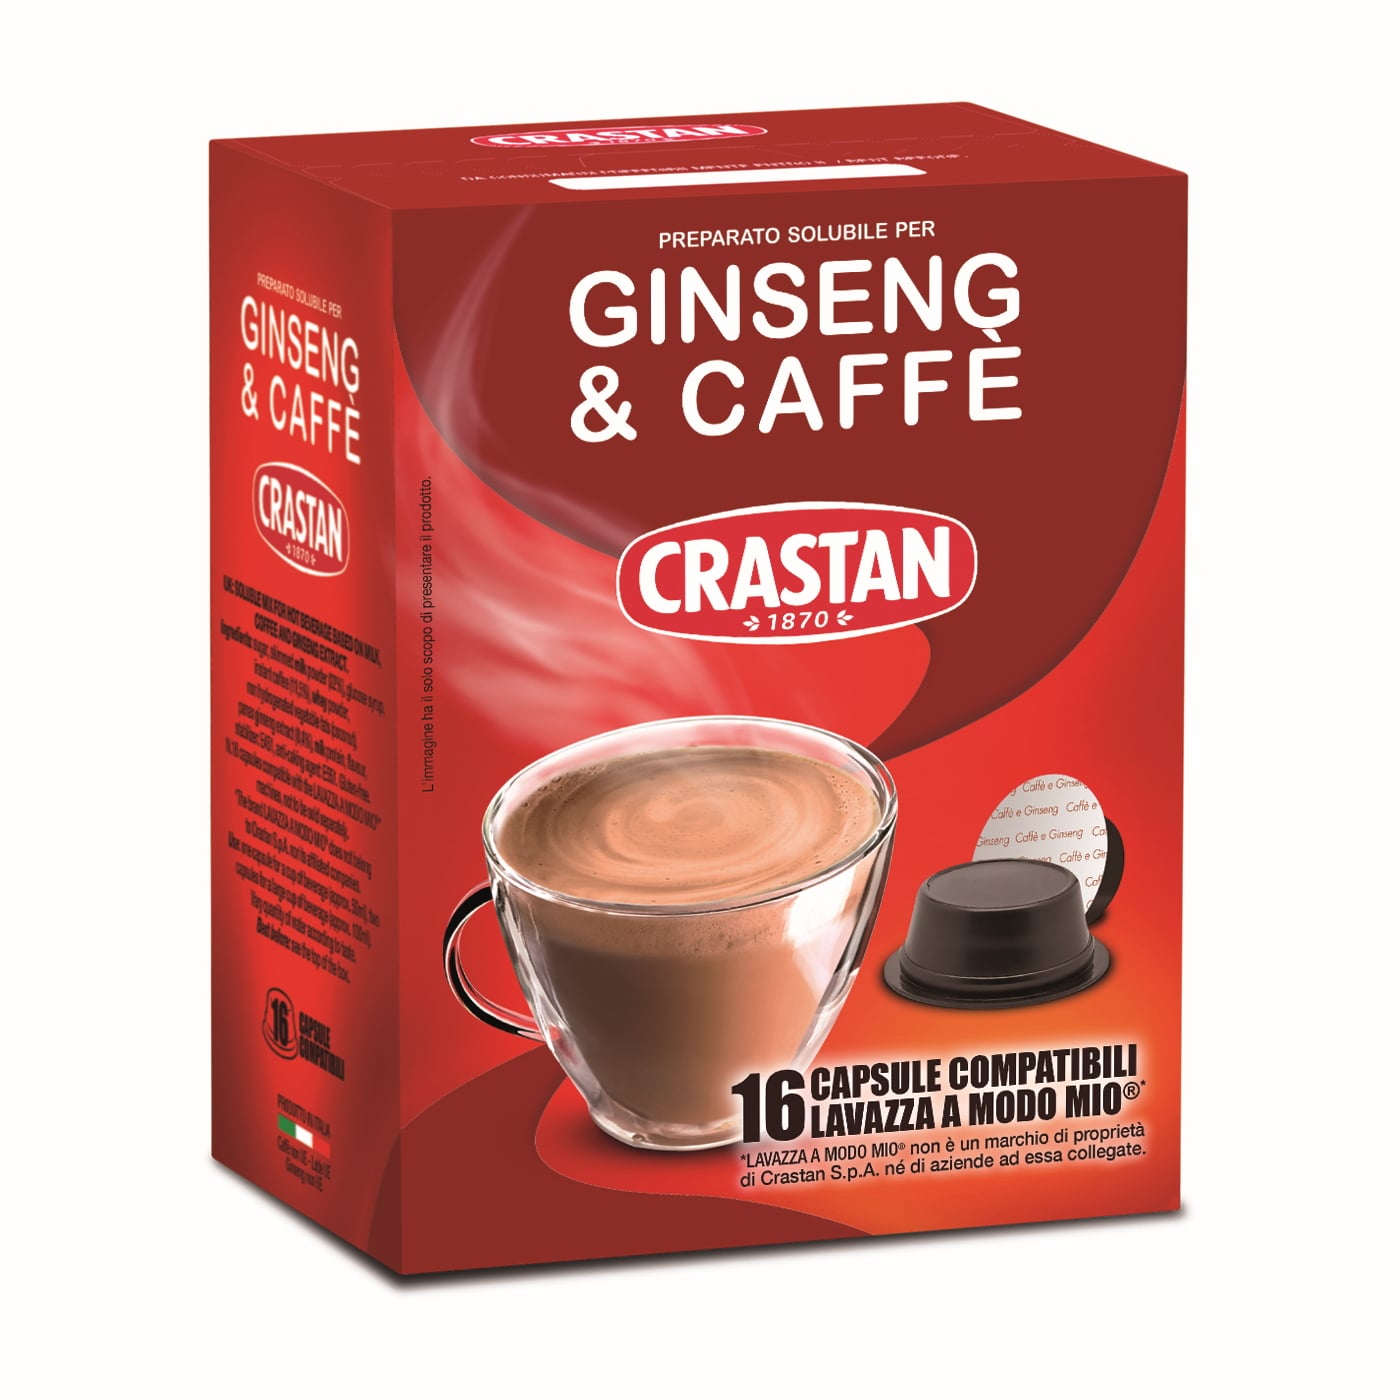 192 Capsule Ginseng e Caffè compatibili Lavazza a Modo Mio – Crastan